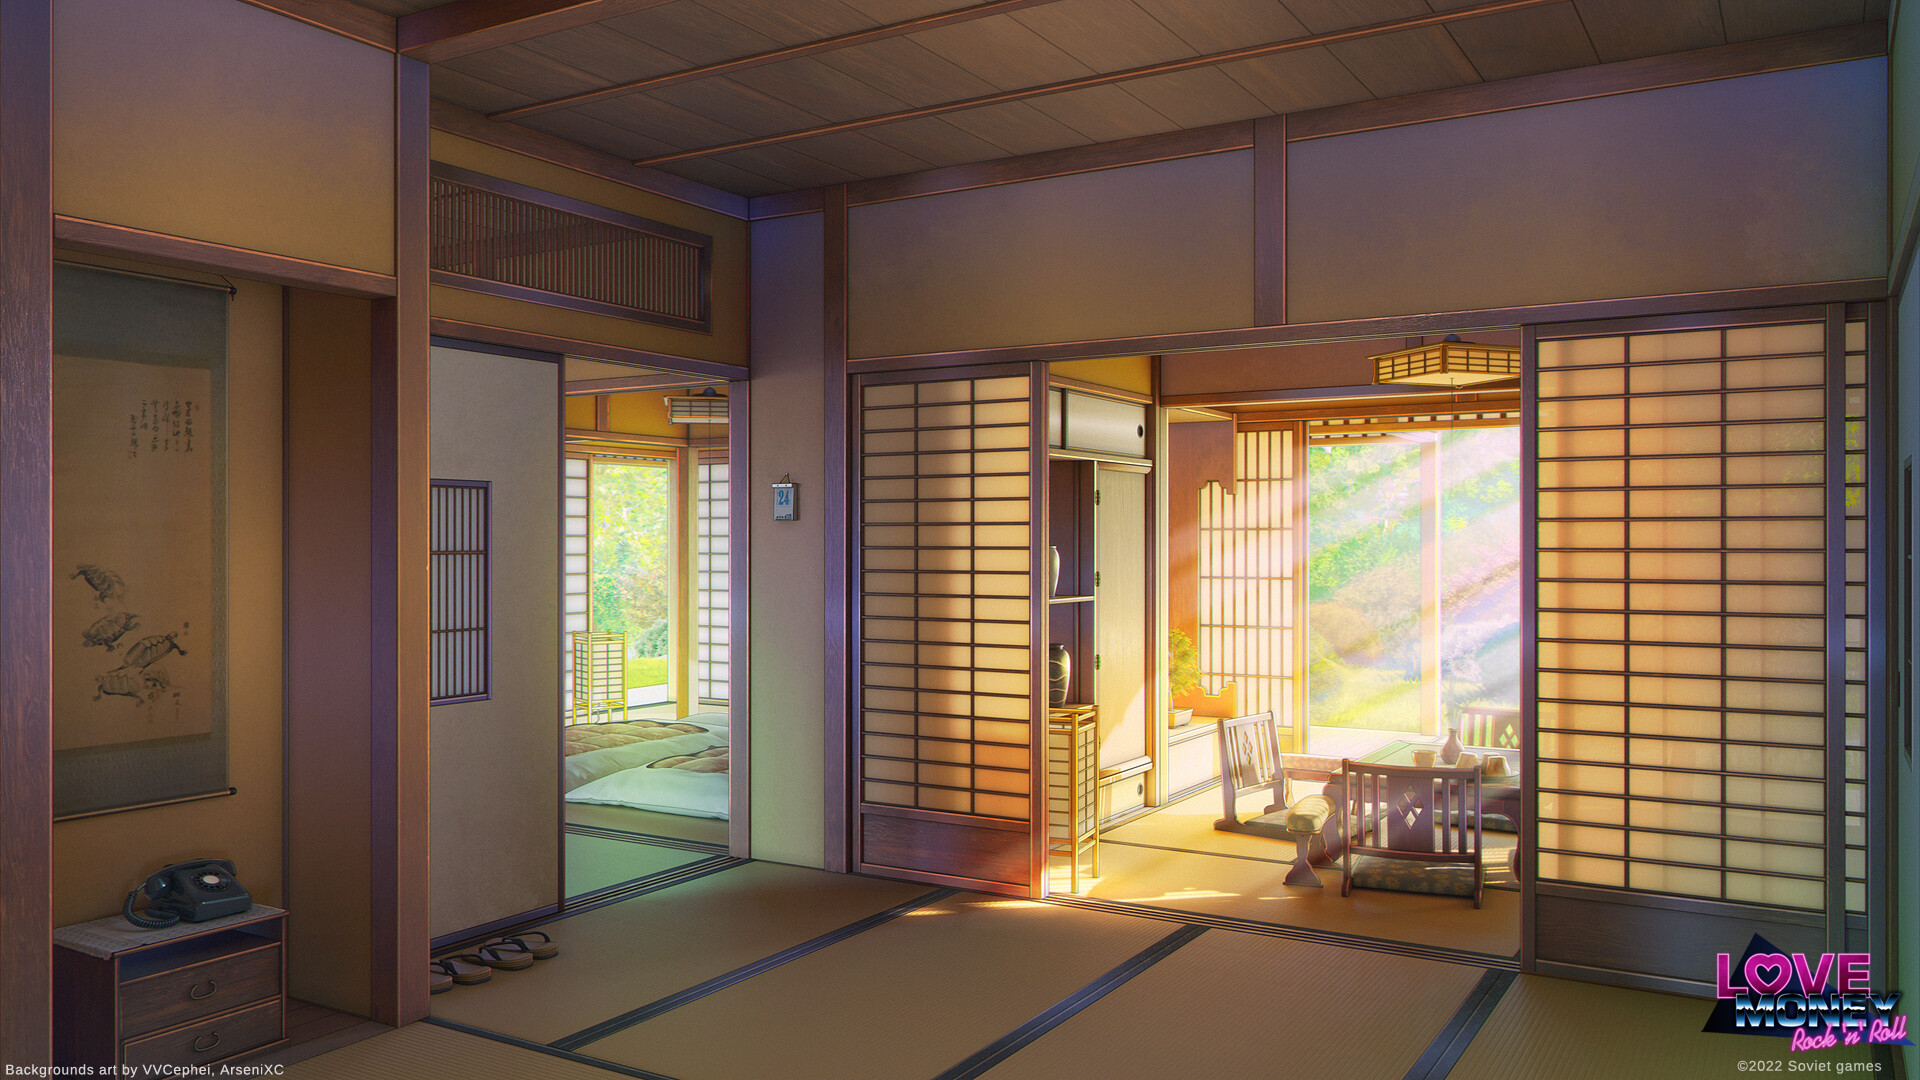 Trải nghiệm cuộc sống Nhật Bản truyền thống thông qua bộ sưu tập nội thất nhà làng Nhật bản trong anime của chúng tôi. Với những thiết kế tinh tế và các chi tiết độc đáo, bạn sẽ có cơ hội khám phá một thế giới của những thước phim và truyện tranh anime đầy cảm hứng.